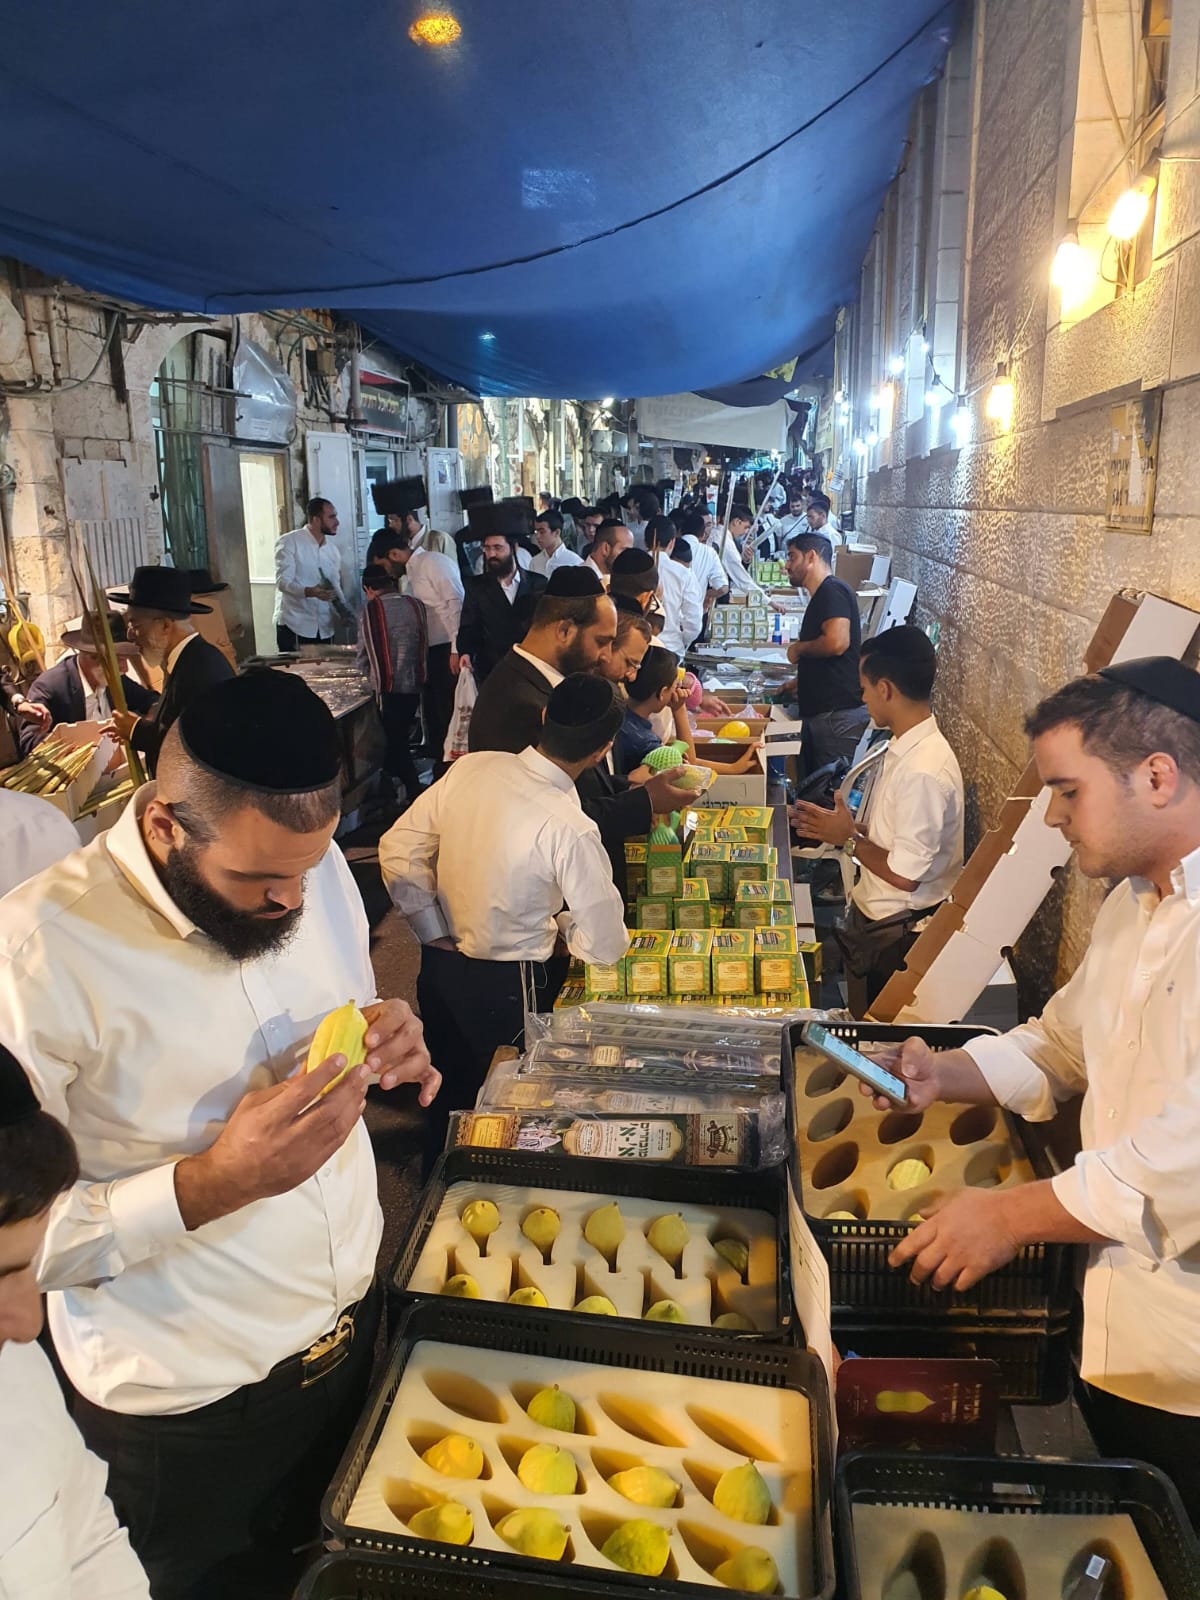 אתרוג, לולב, הדס וערבה בכיכר ולירו: שוק ארבעת המינים המסורתי של ירושלים חוזר!